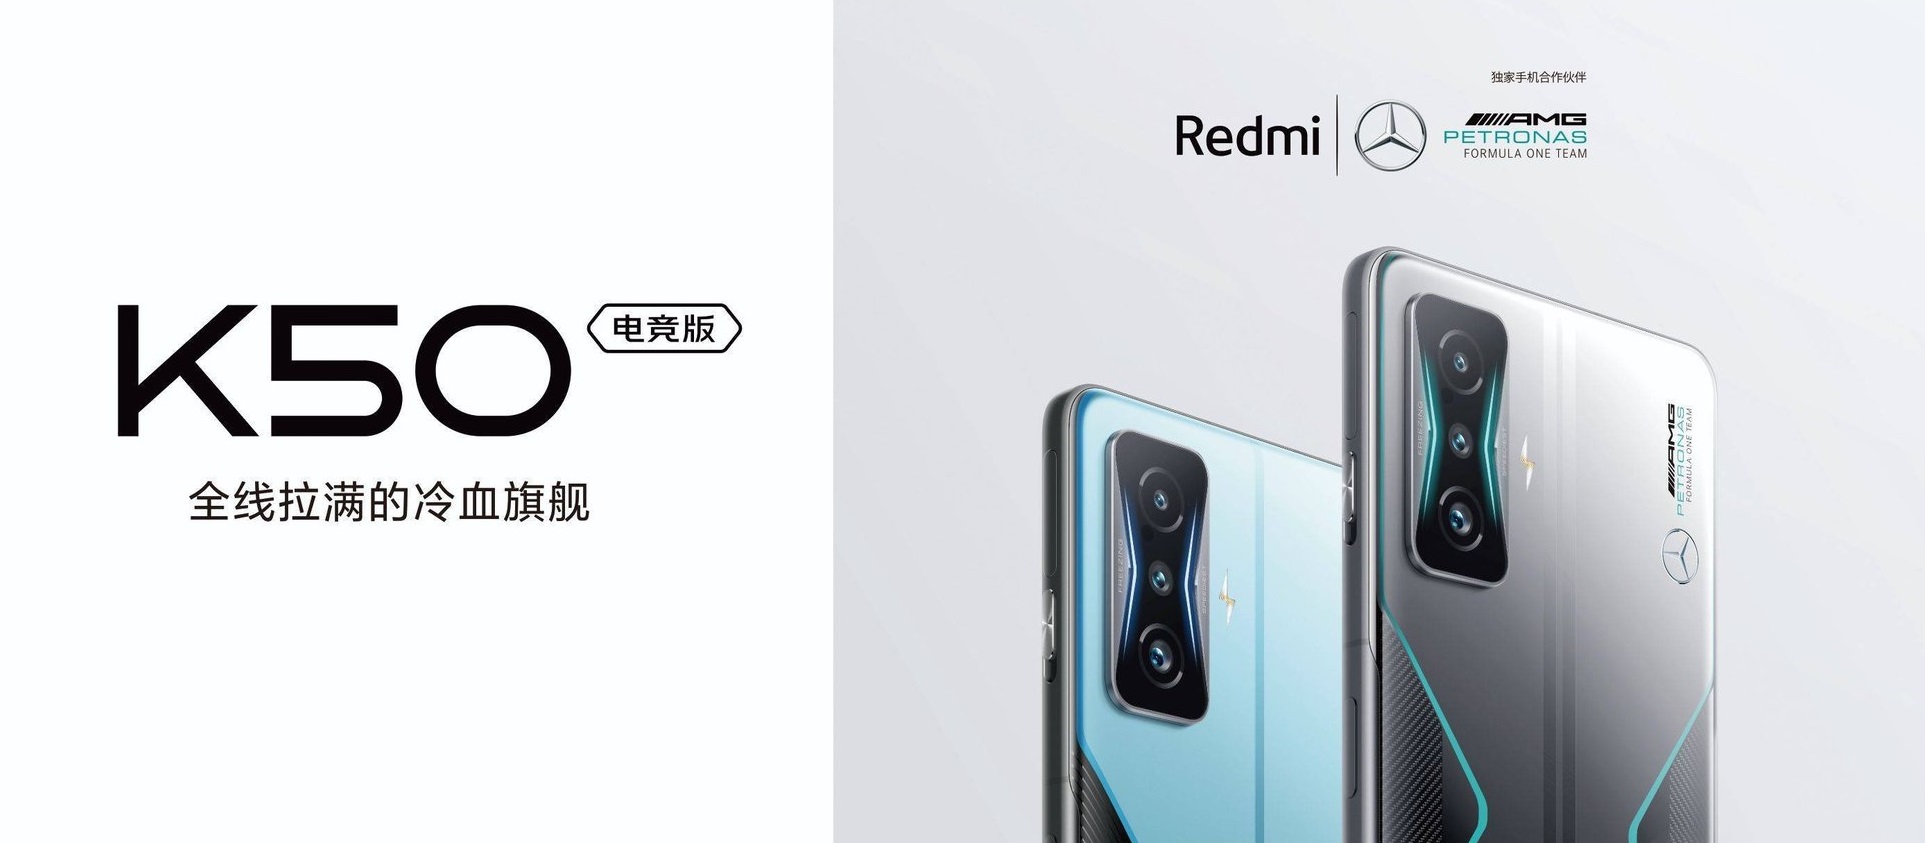 Xiaomi rilascerà uno smartphone da gioco in collaborazione con Mercedes-Benz